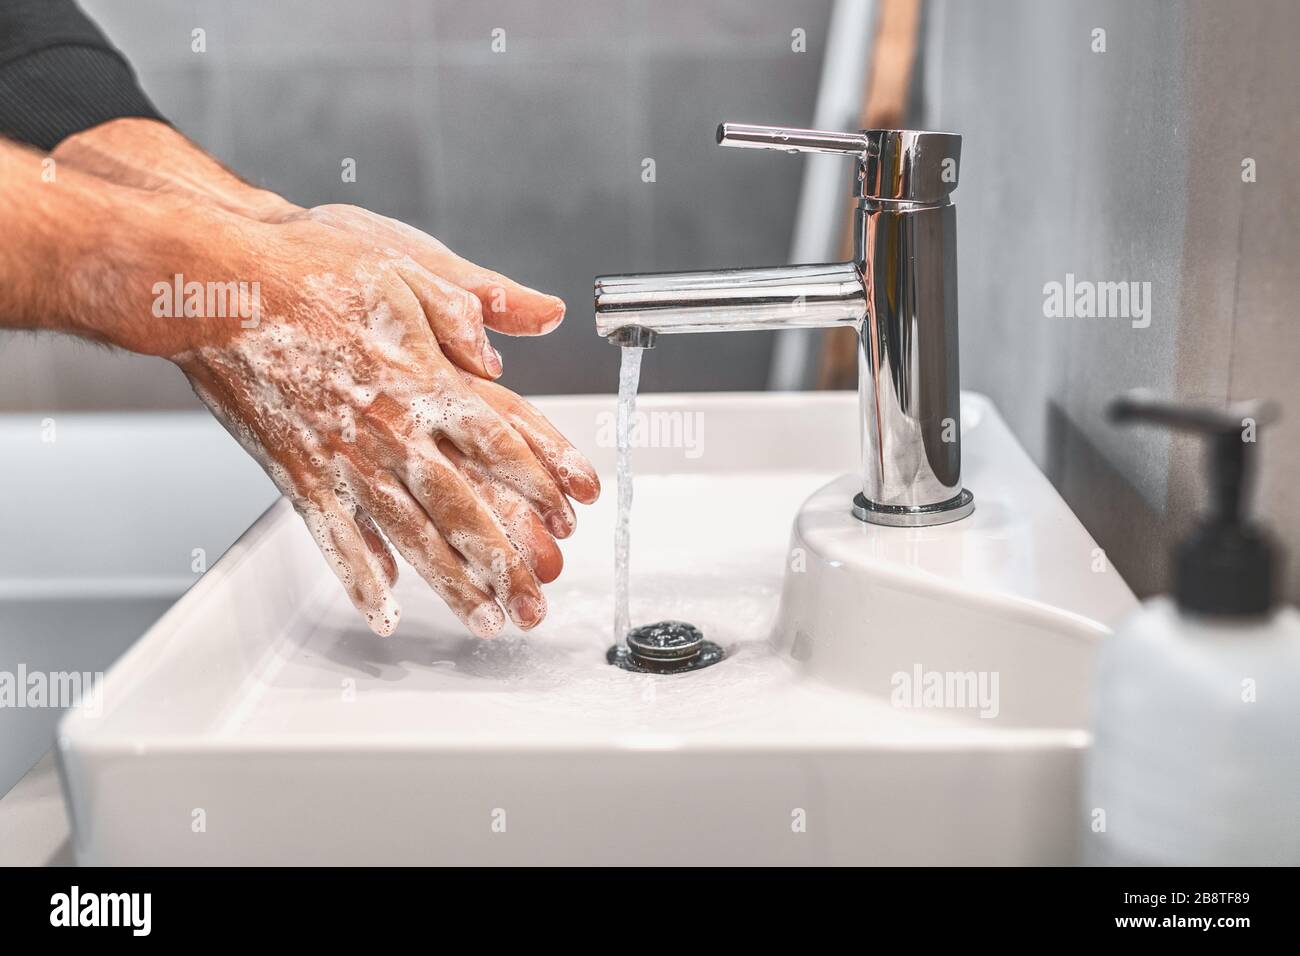 Se laver les mains avec du savon et de l'eau chaude pendant 20 secondes pour prévenir le virus corona COVID-10. Homme de travail pour l'hygiène du virus corona pour arrêter la propagation Banque D'Images